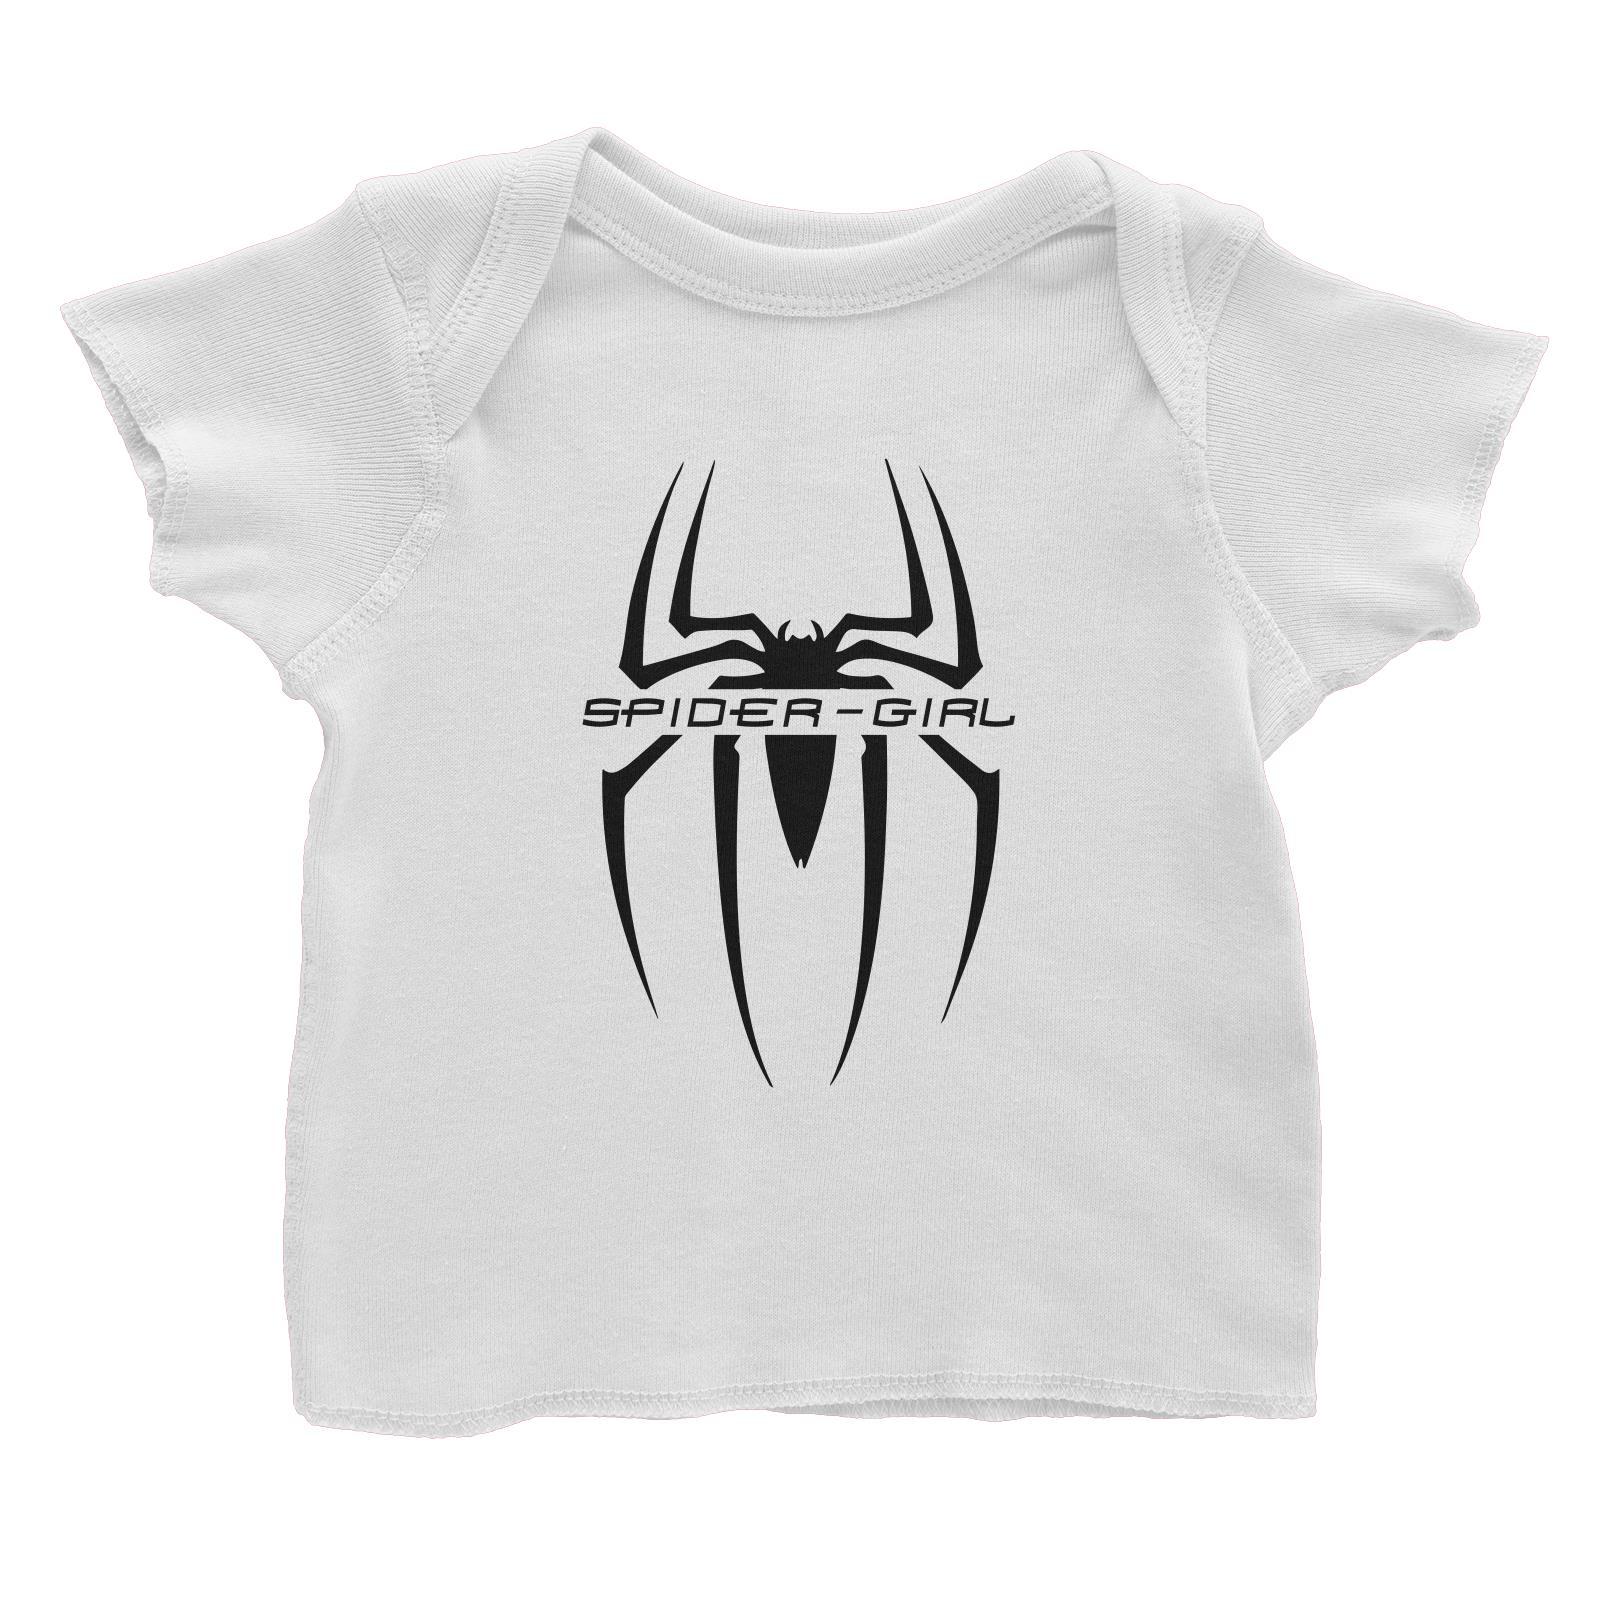 Superhero Spider Girl Baby T-Shirt  Matching Family